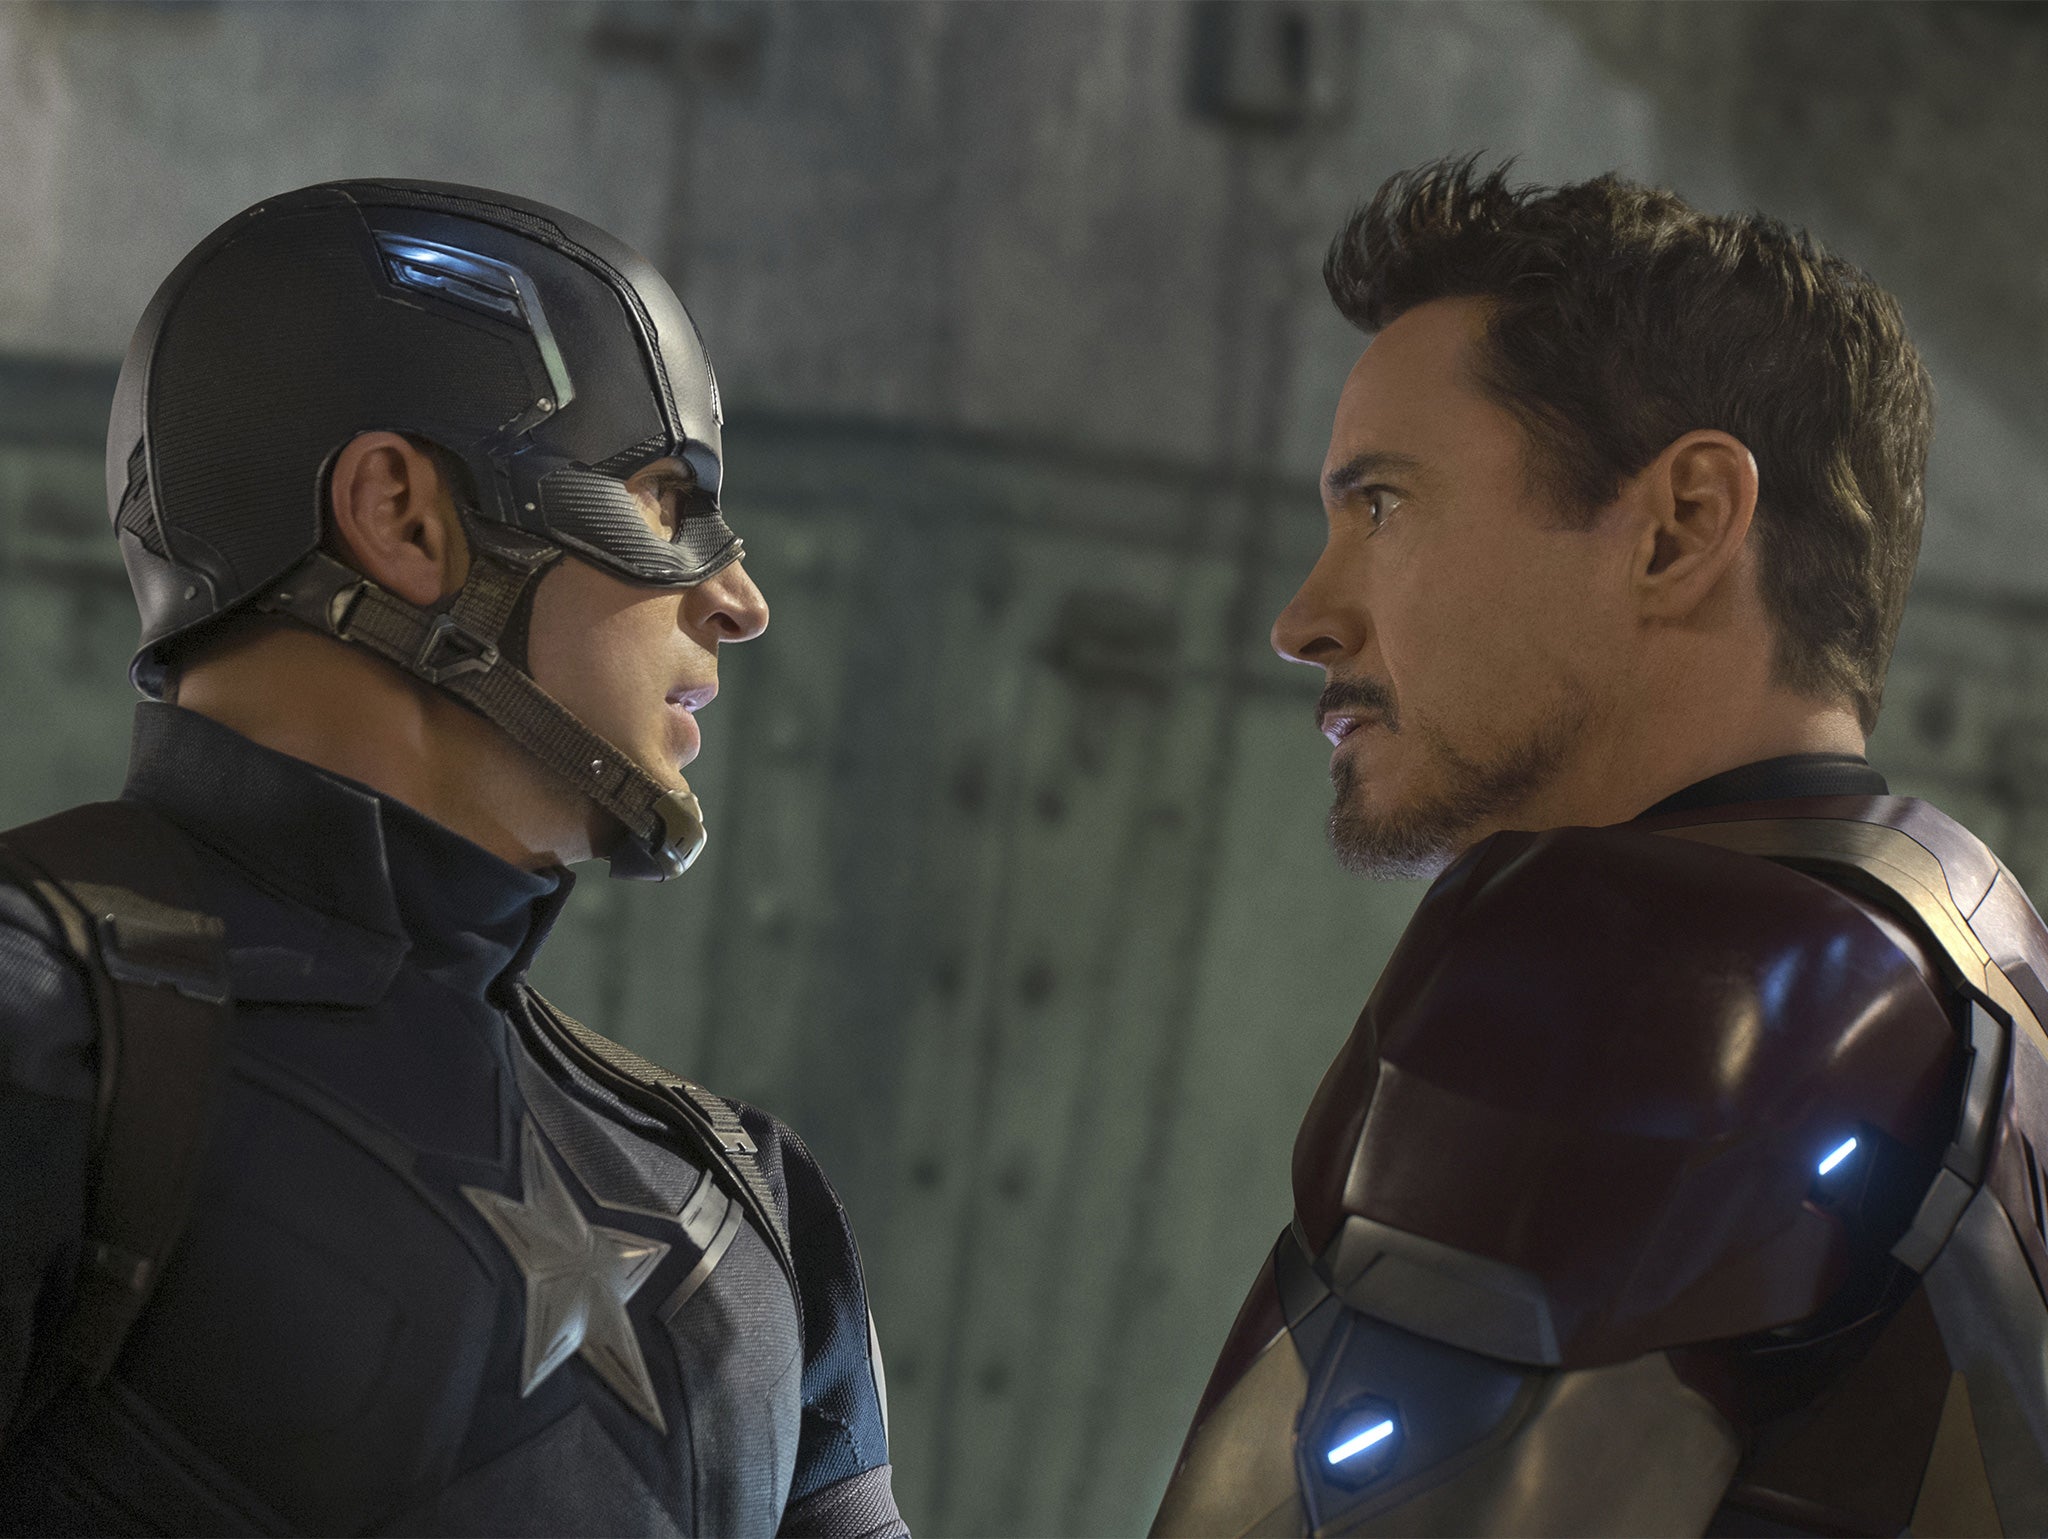 Chris Evans and Robert Downey Jr in ‘Captain America: Civil War’